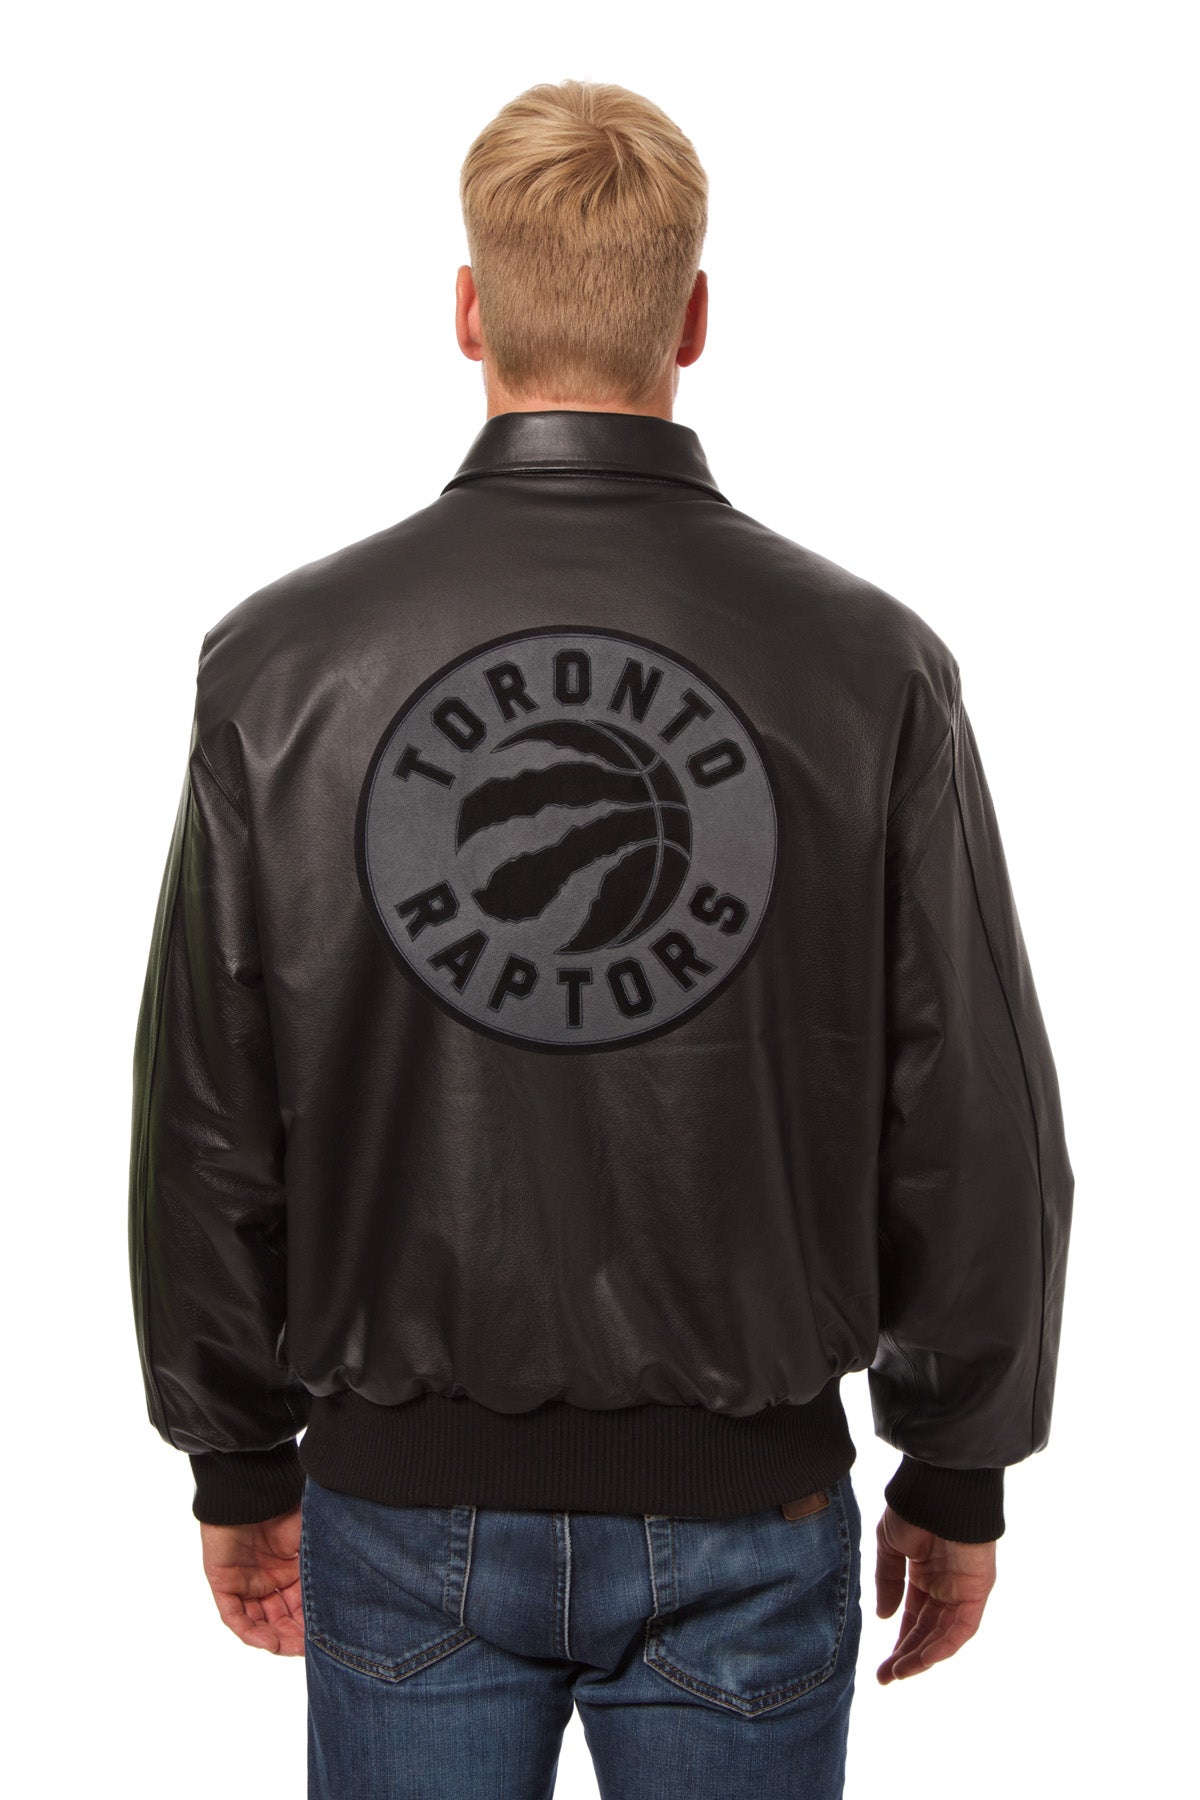 raptors leather jacket